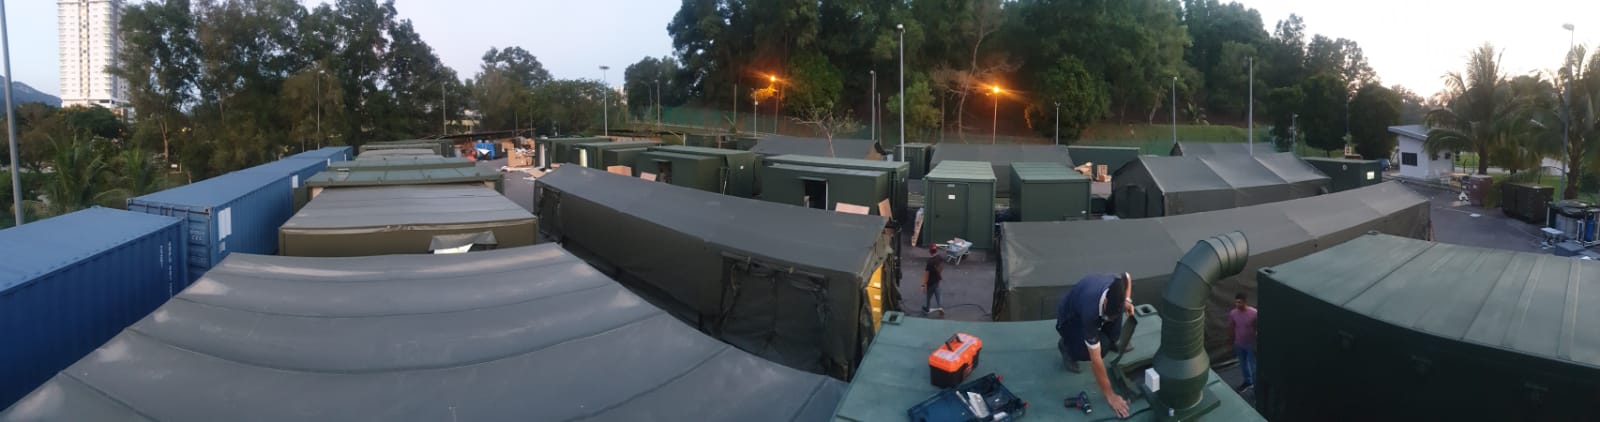 Malezya savunma bakanlığı 2 set konteyner hastane laboratuvarı